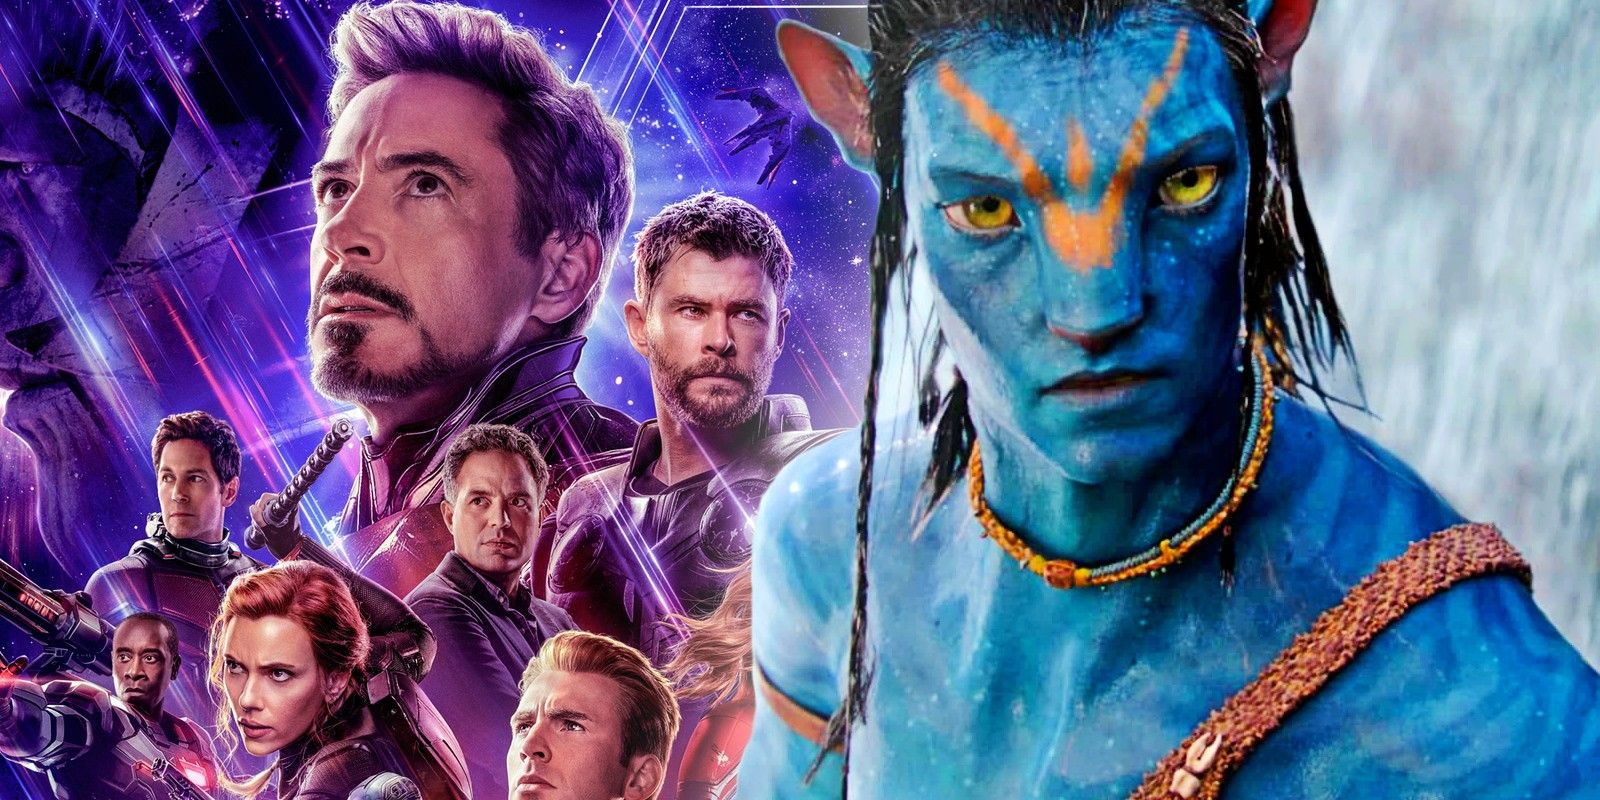 Avengers Endgame Passes Avatar Original Box Office Run